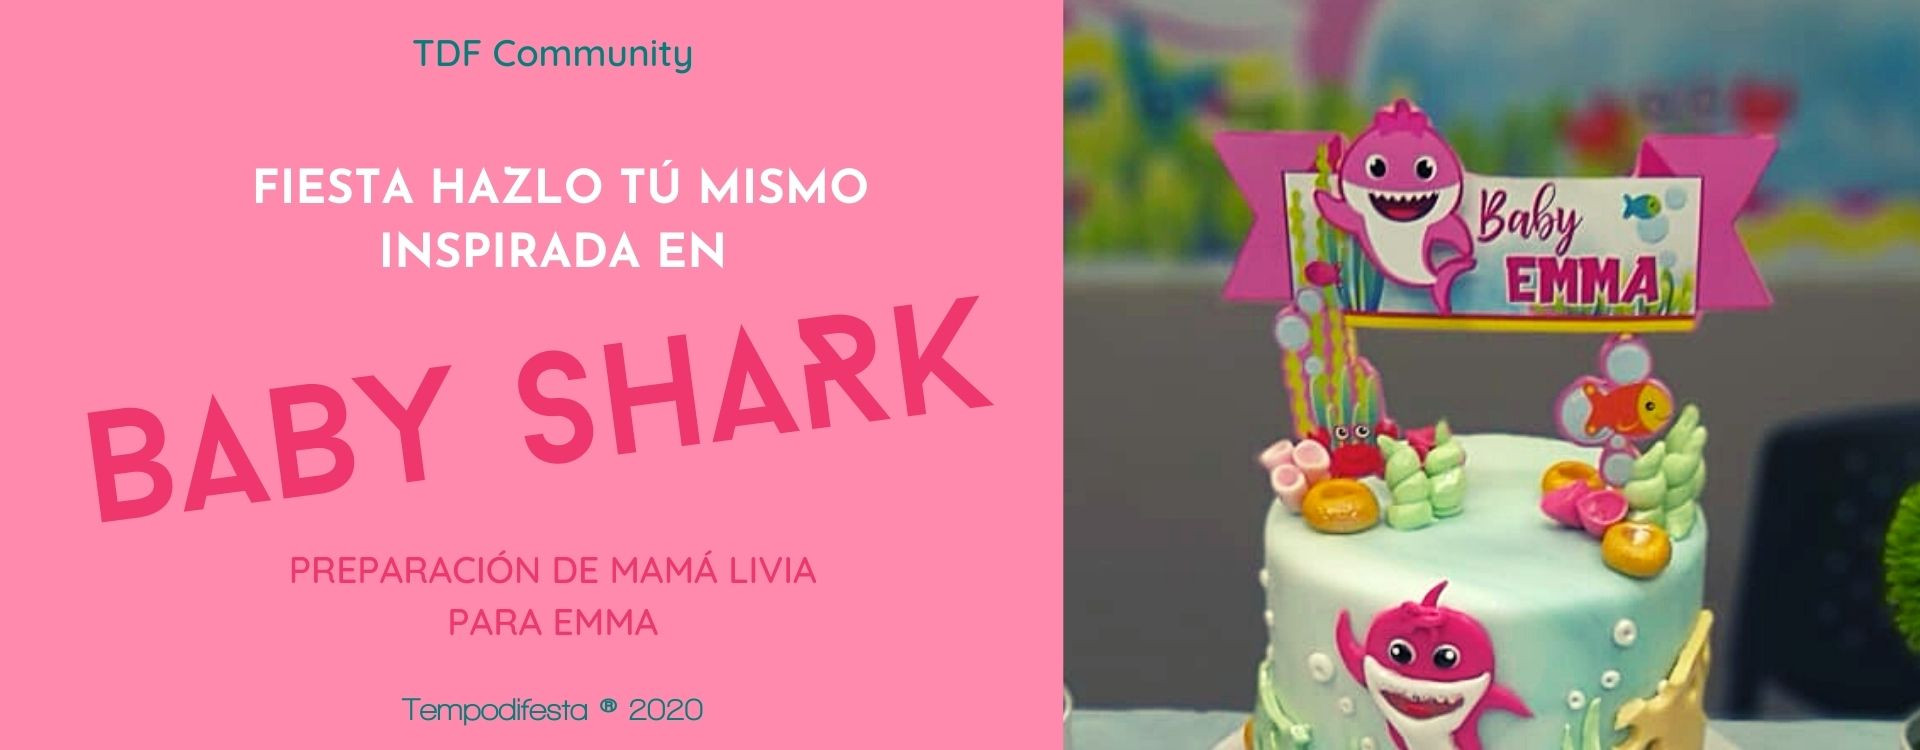 Increible Invitación de Cumpleaños de Baby Shark, Invitación de